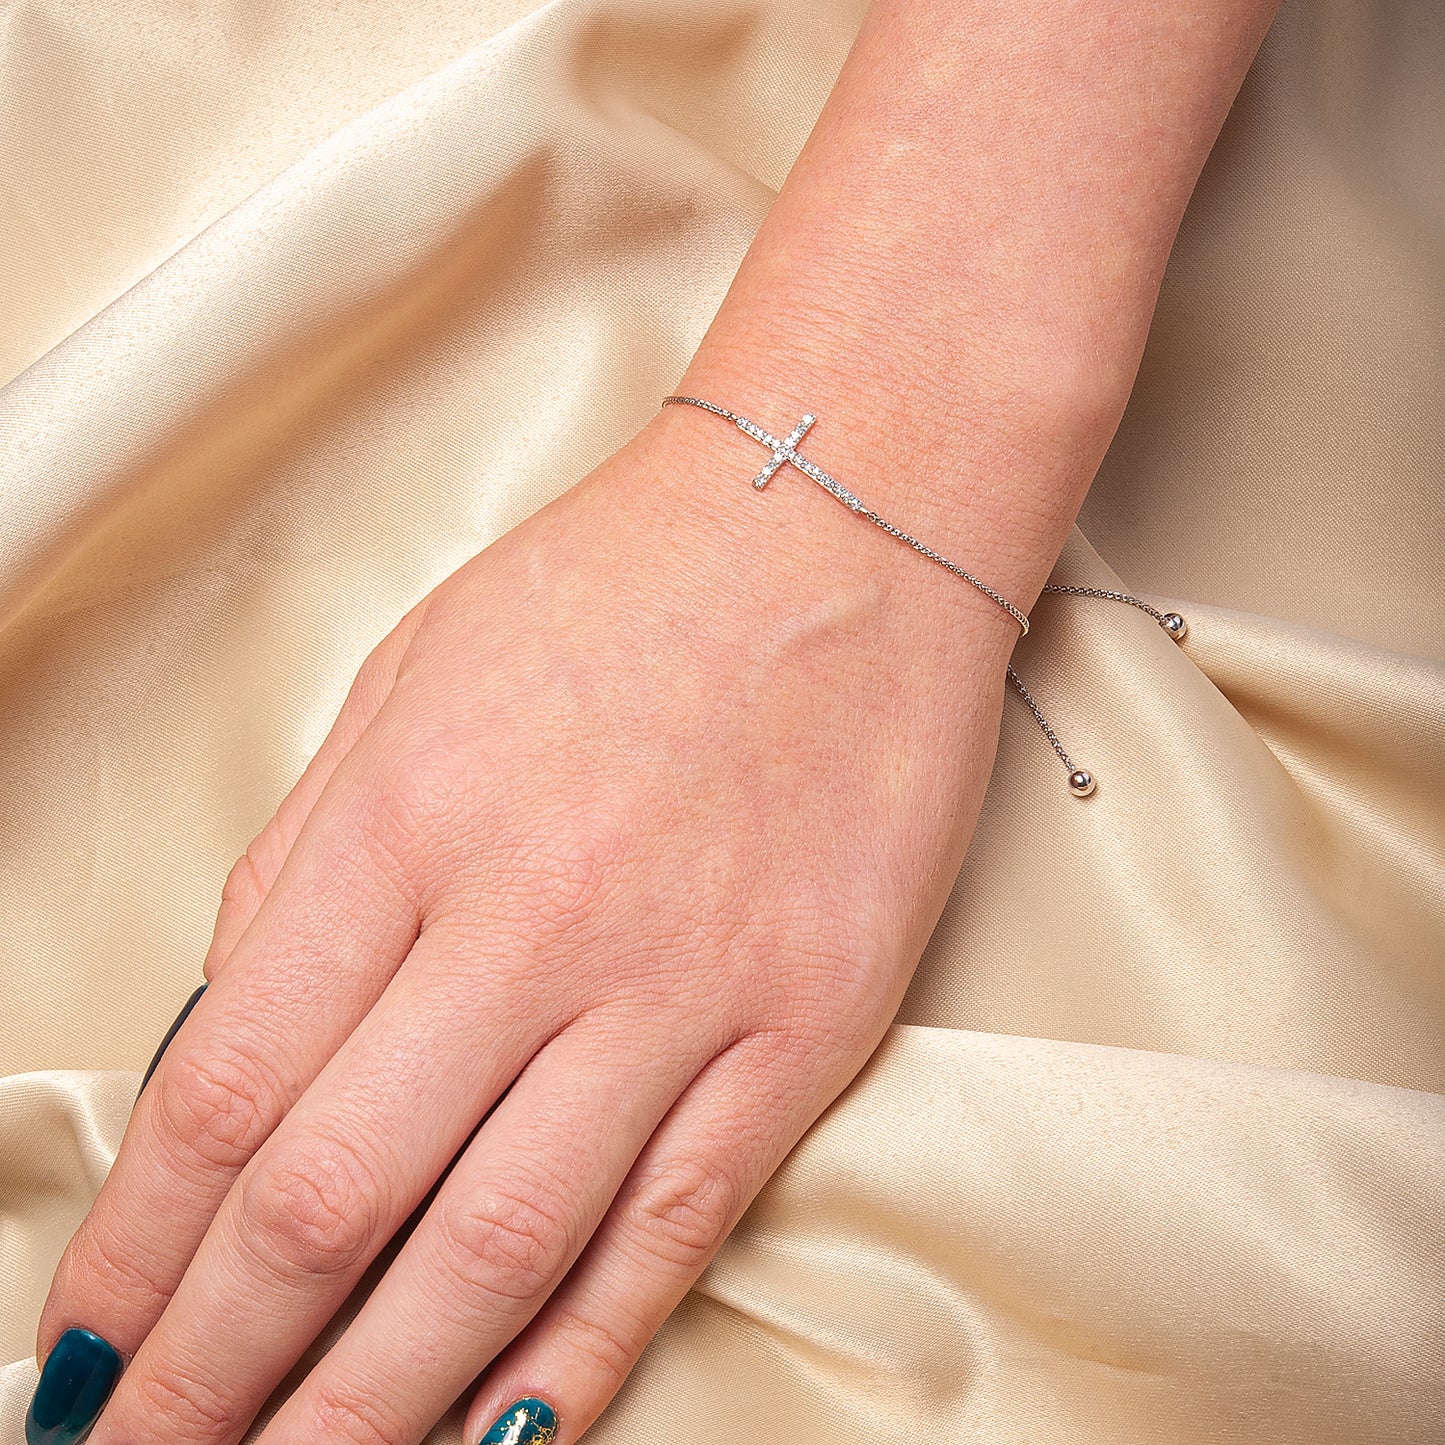 Brooke Diamond Cross Bolo Bracelet in Lady's Hand